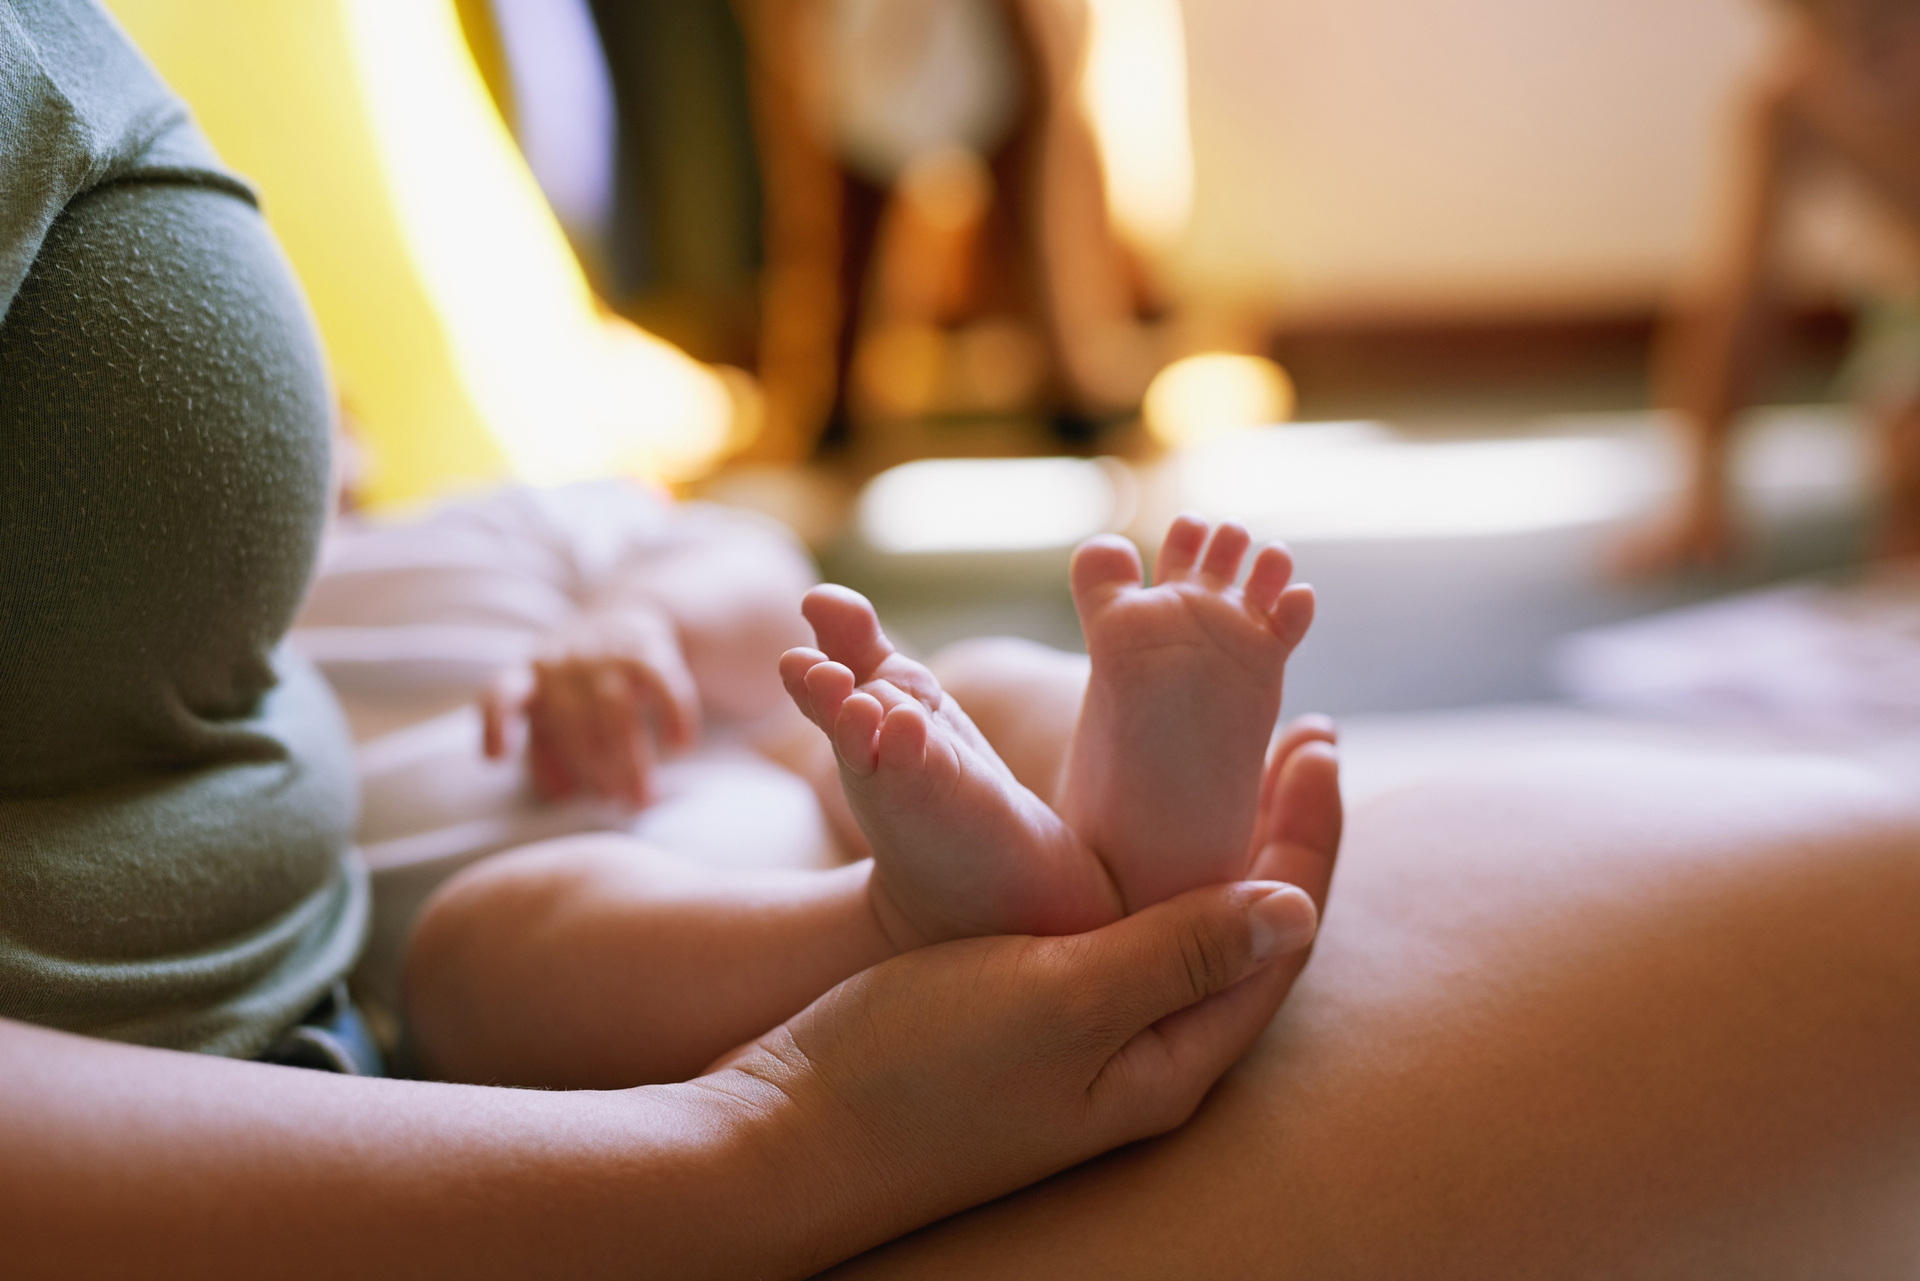 O contato pele a pele reforça a importância do vínculo entre a mãe e o bebê para a formação de sua personalidade e percepção sobre o mundo